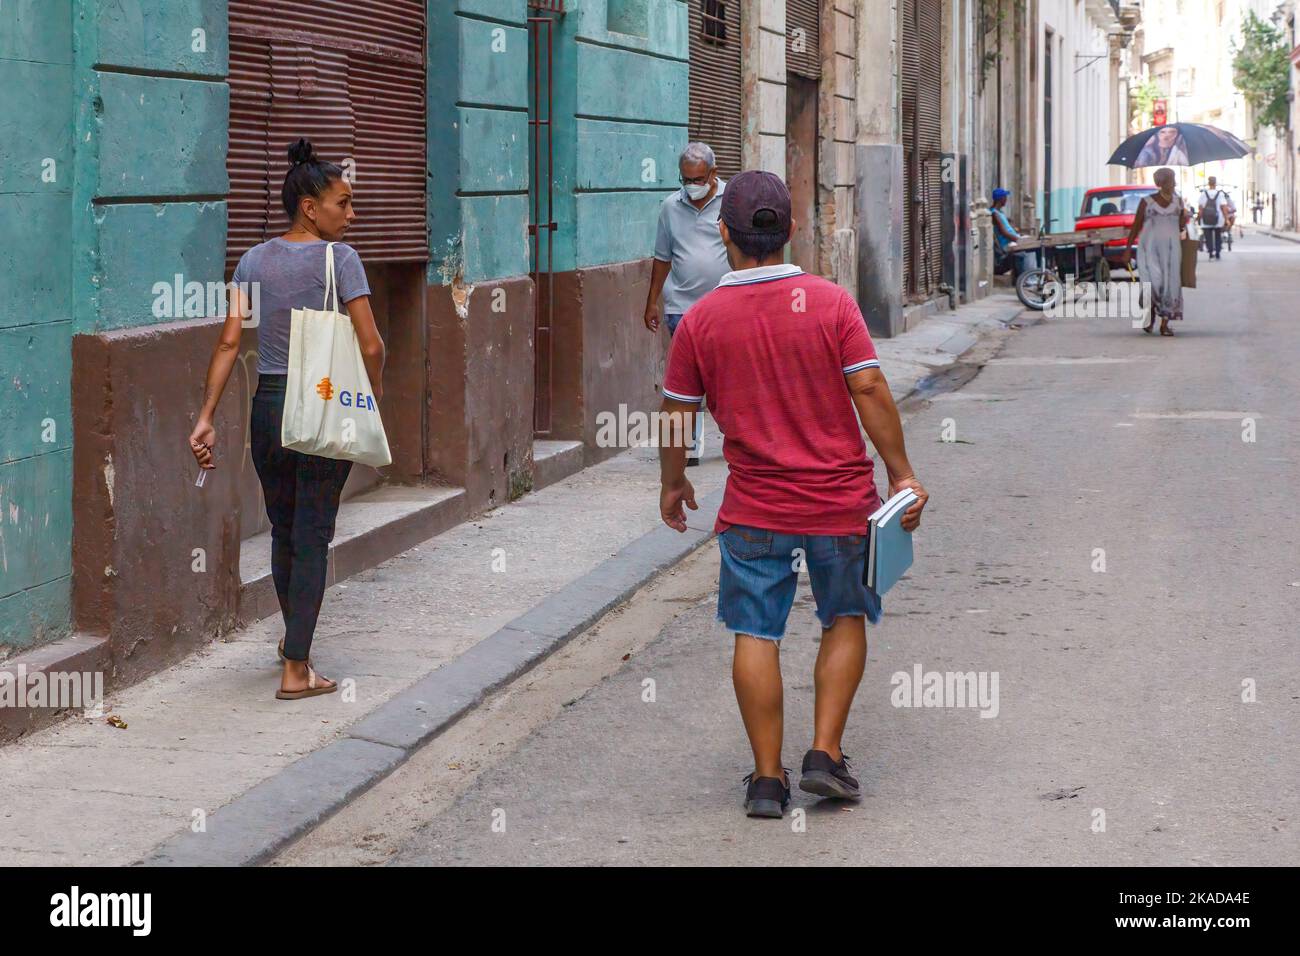 El estilo de vida de los cubanos mientras caminan por la calle de una ciudad. Un hombre que lleva libros habla con una mujer en la acera Foto de stock